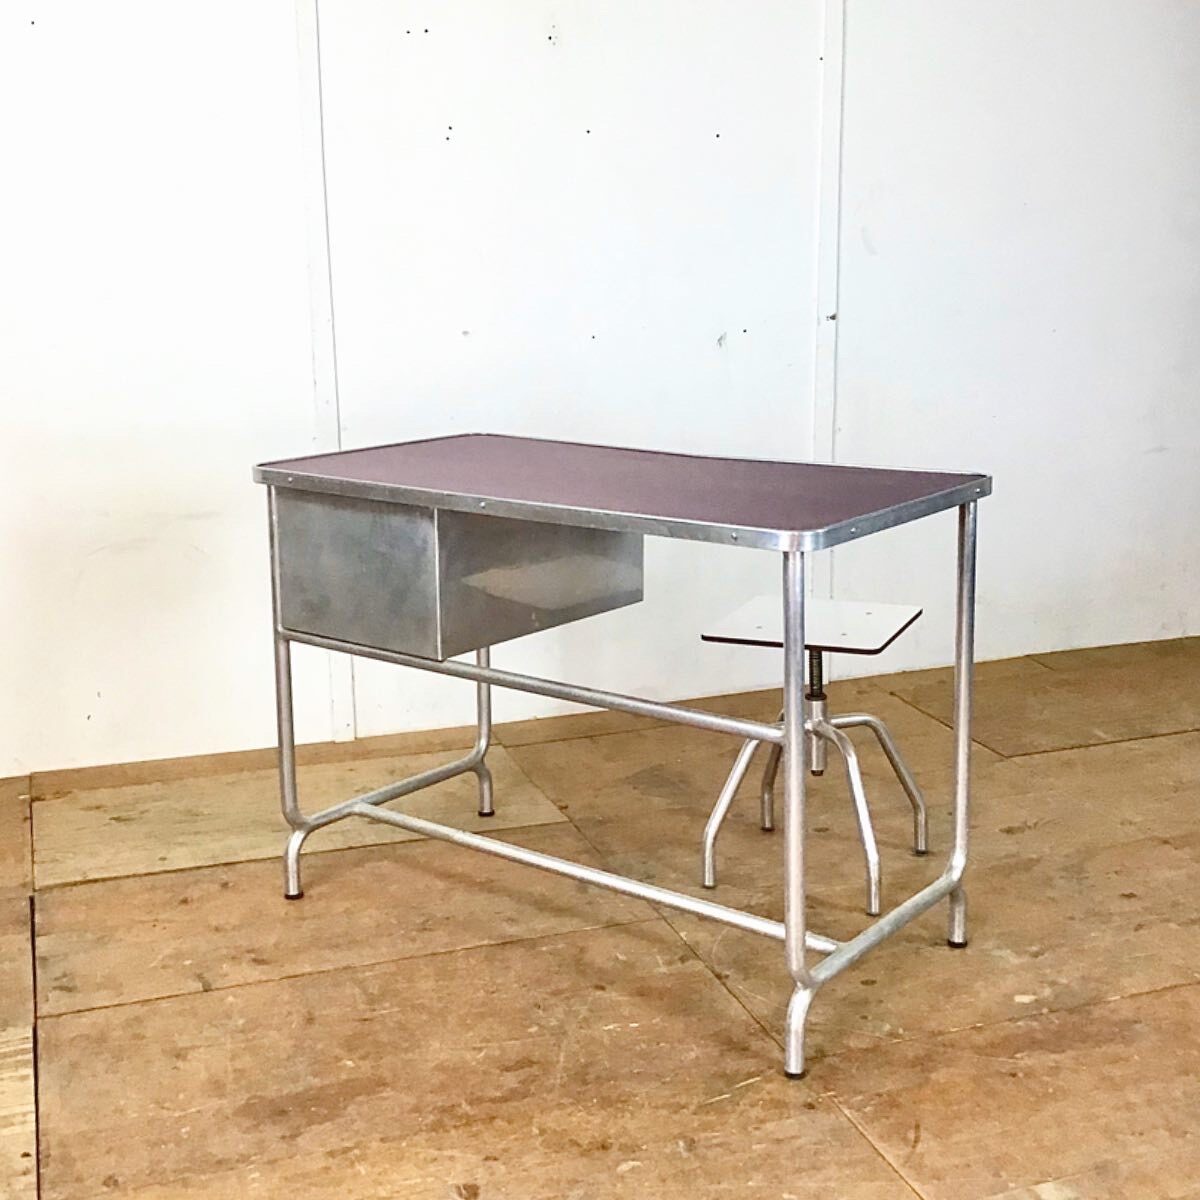 Aluminium Tisch. Schreibtisch mit Schubladen. 111cm mal 60cm höhe 78cm. Der Stuhl ist höhenverstellbar. Tisch Oberfläche matt Violett lackiert